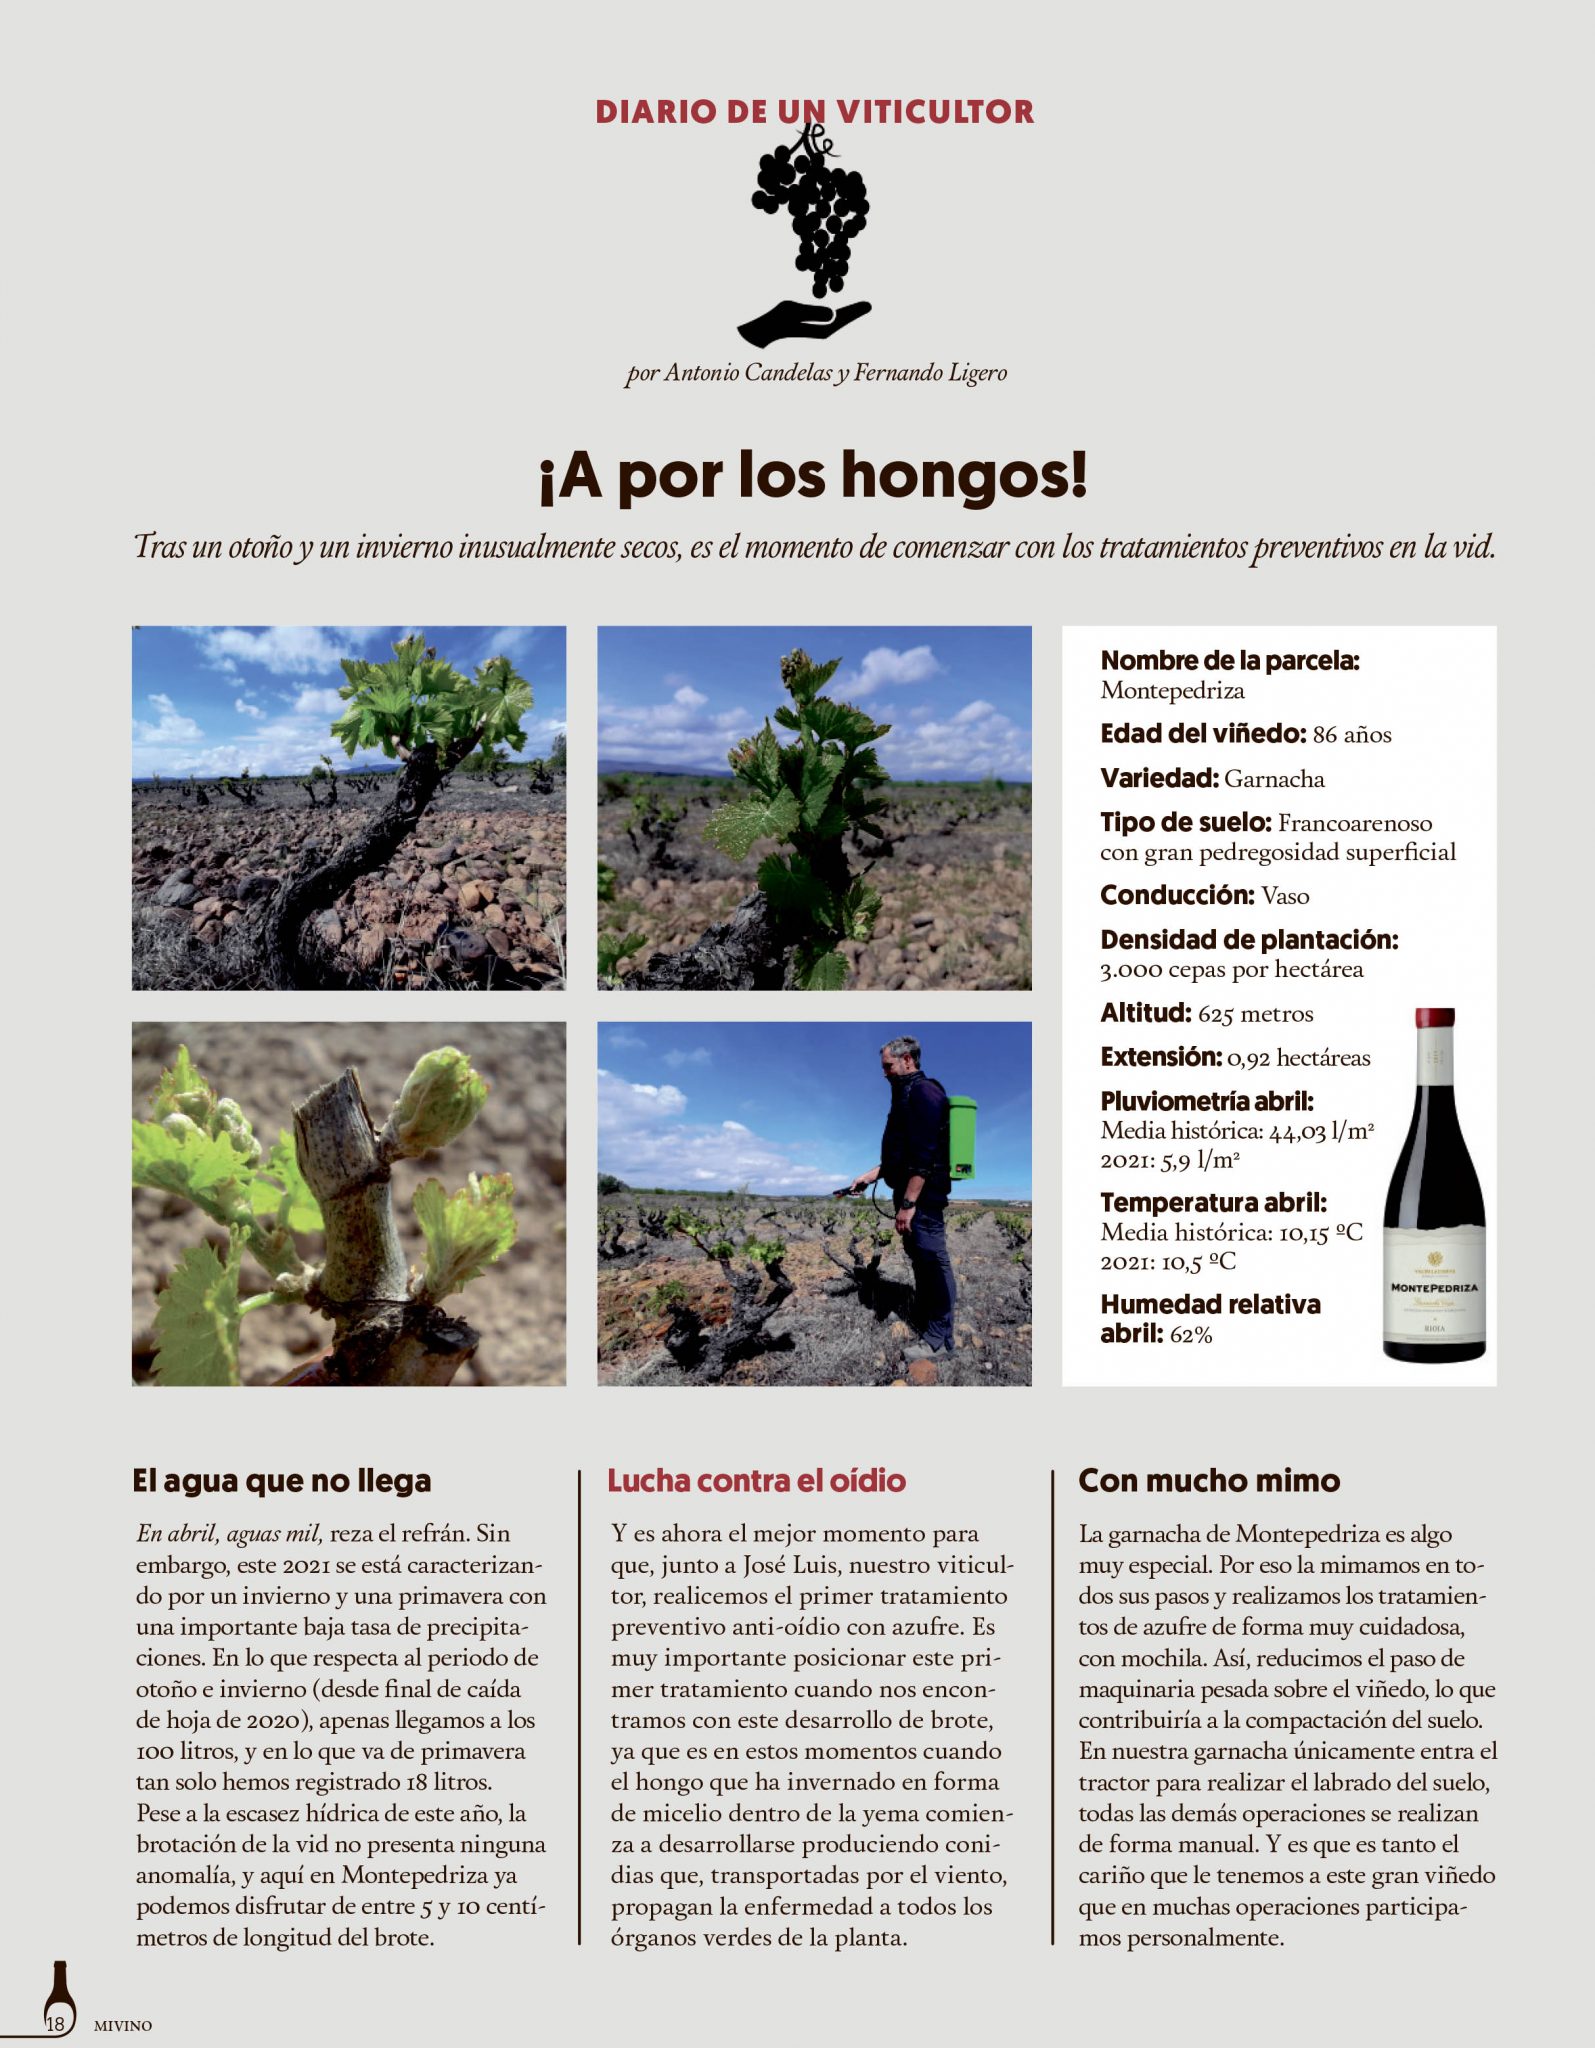 Diario de un viticultor – parte 2